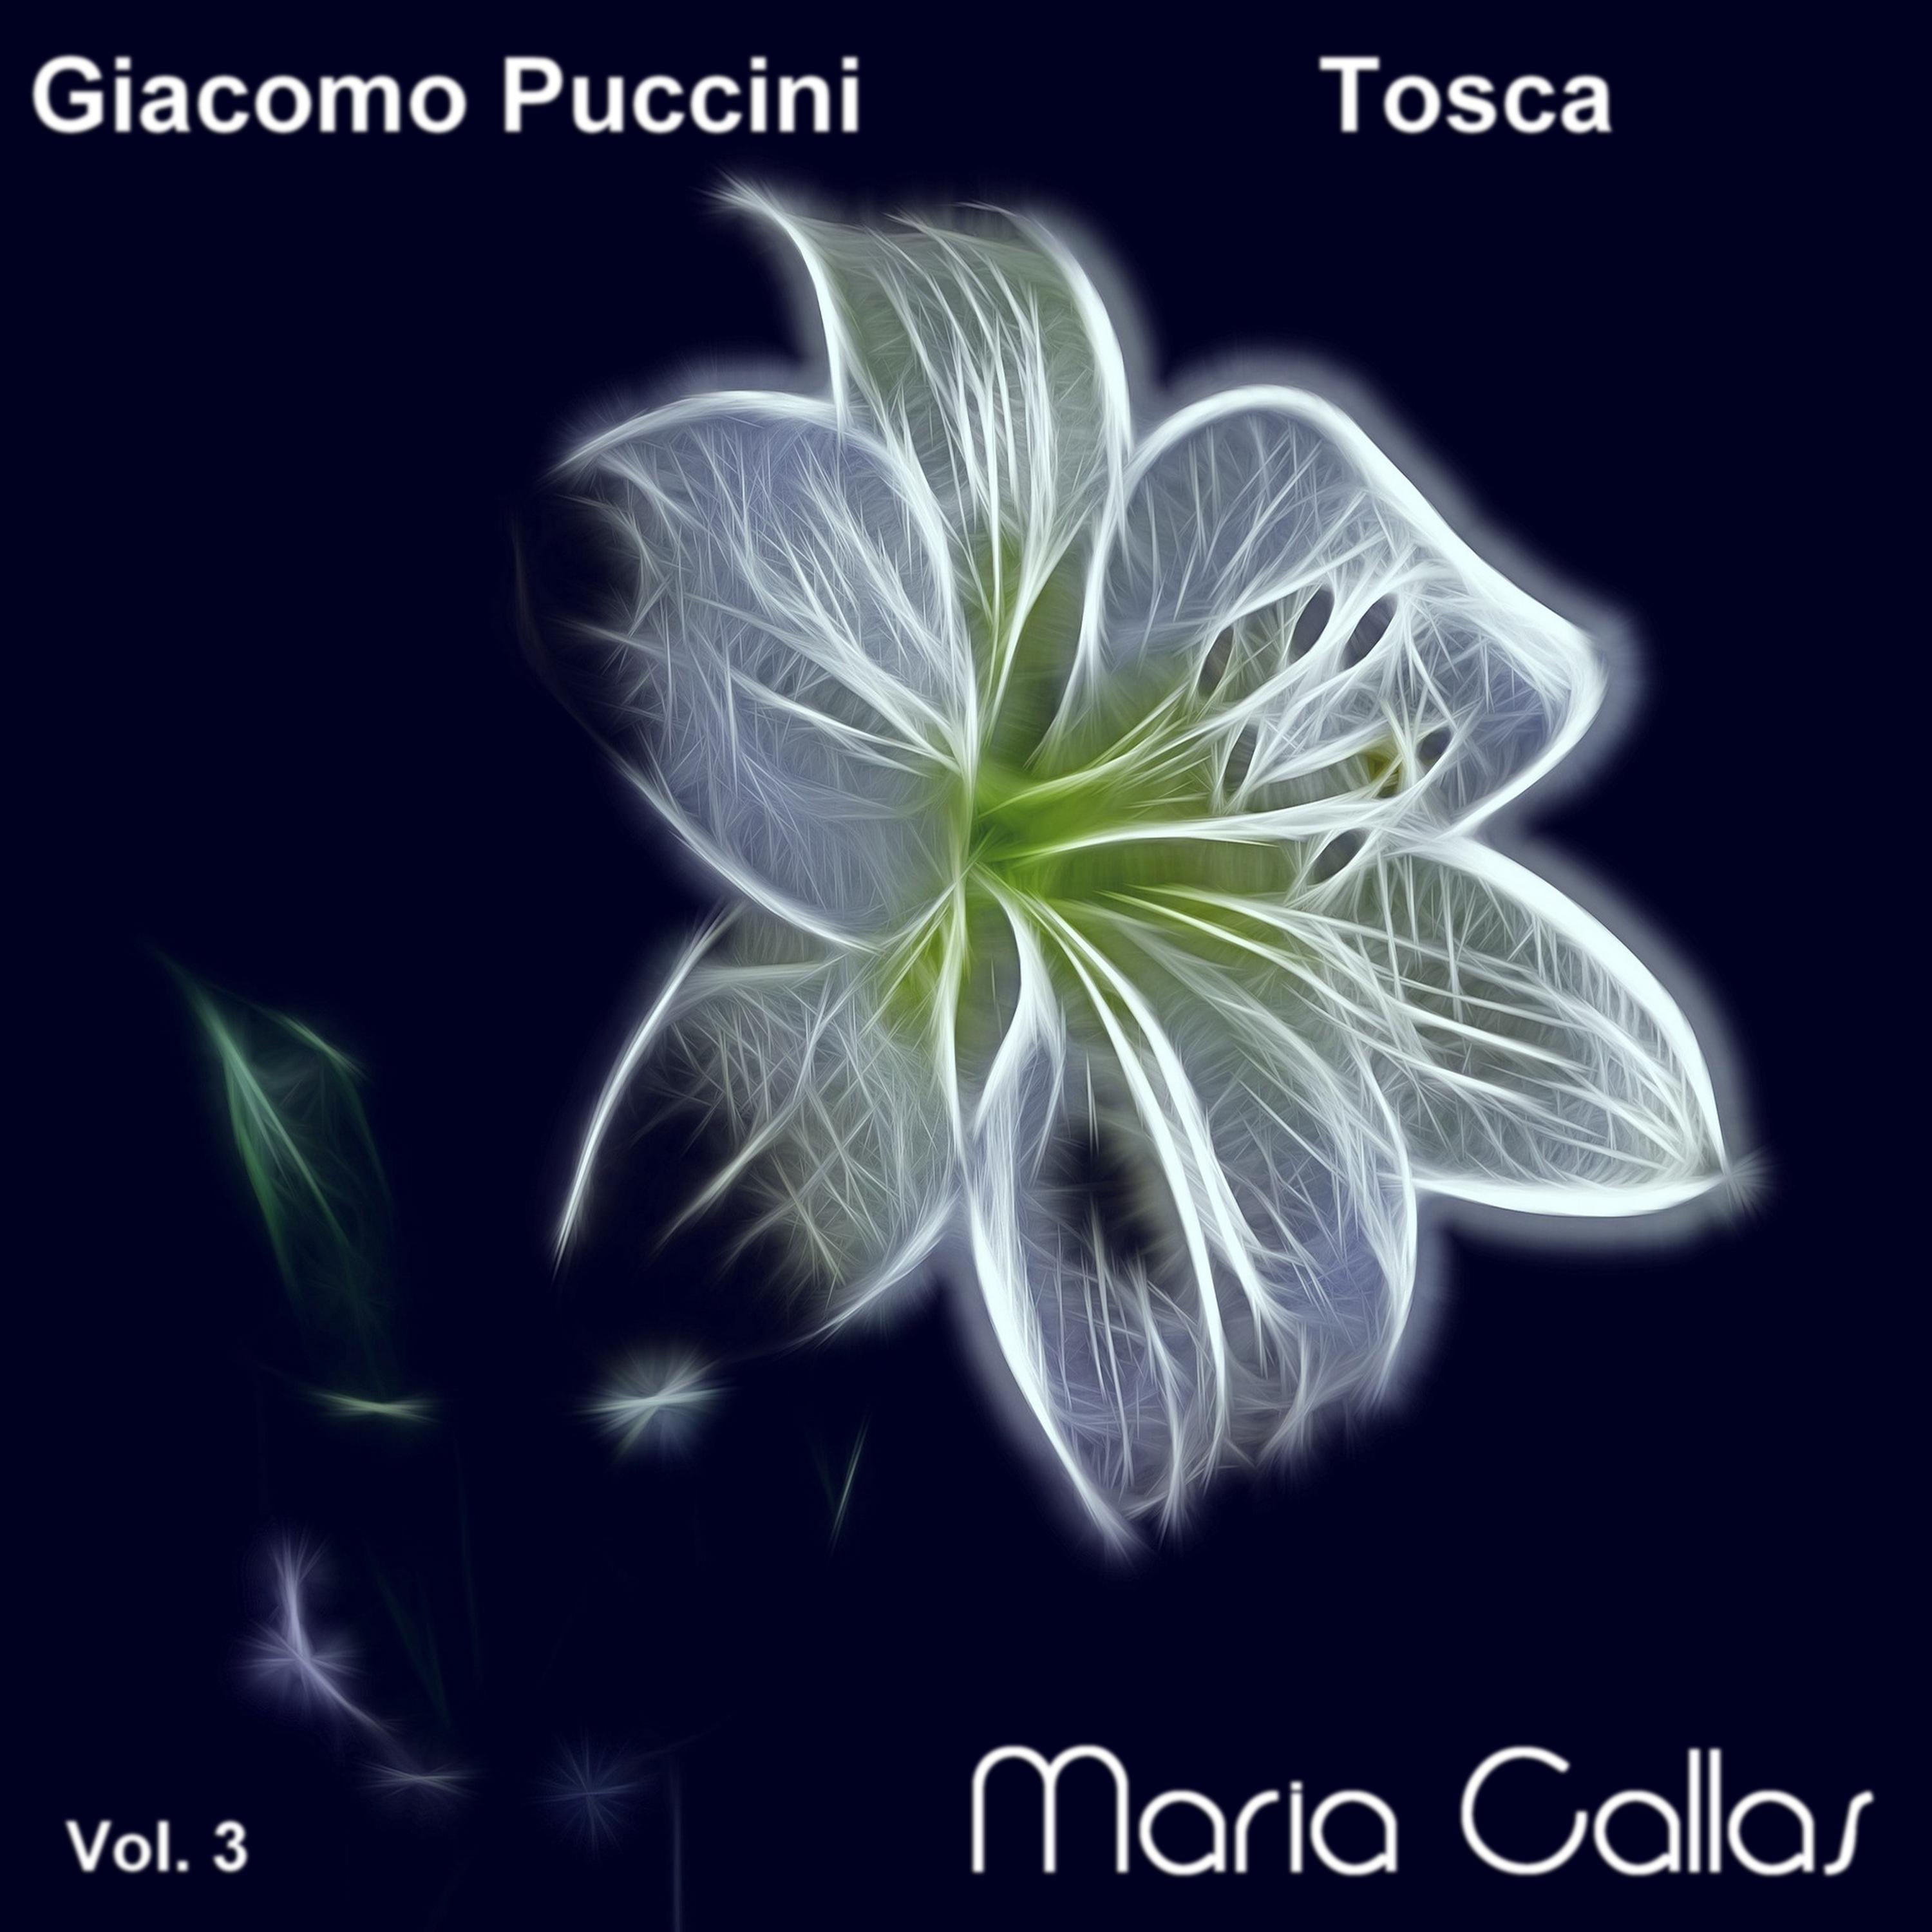 Giacomo Puccini: Tosca (Maria Callas, Vol. 3)